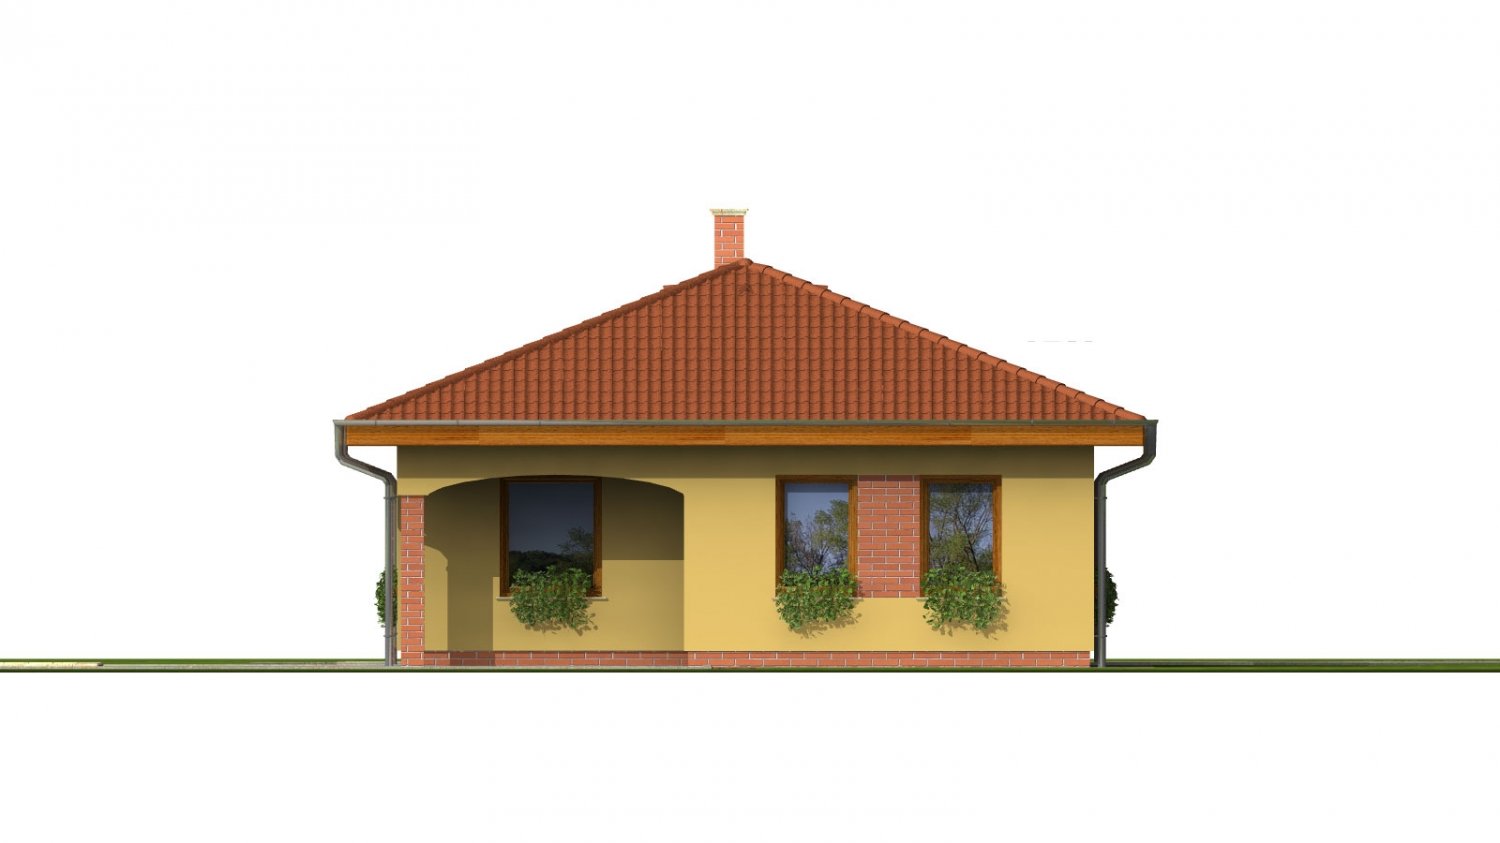 Zrkadlový pohľad 3. - Projekt domu na úzký pozemek s valbovou střechou a terasou.